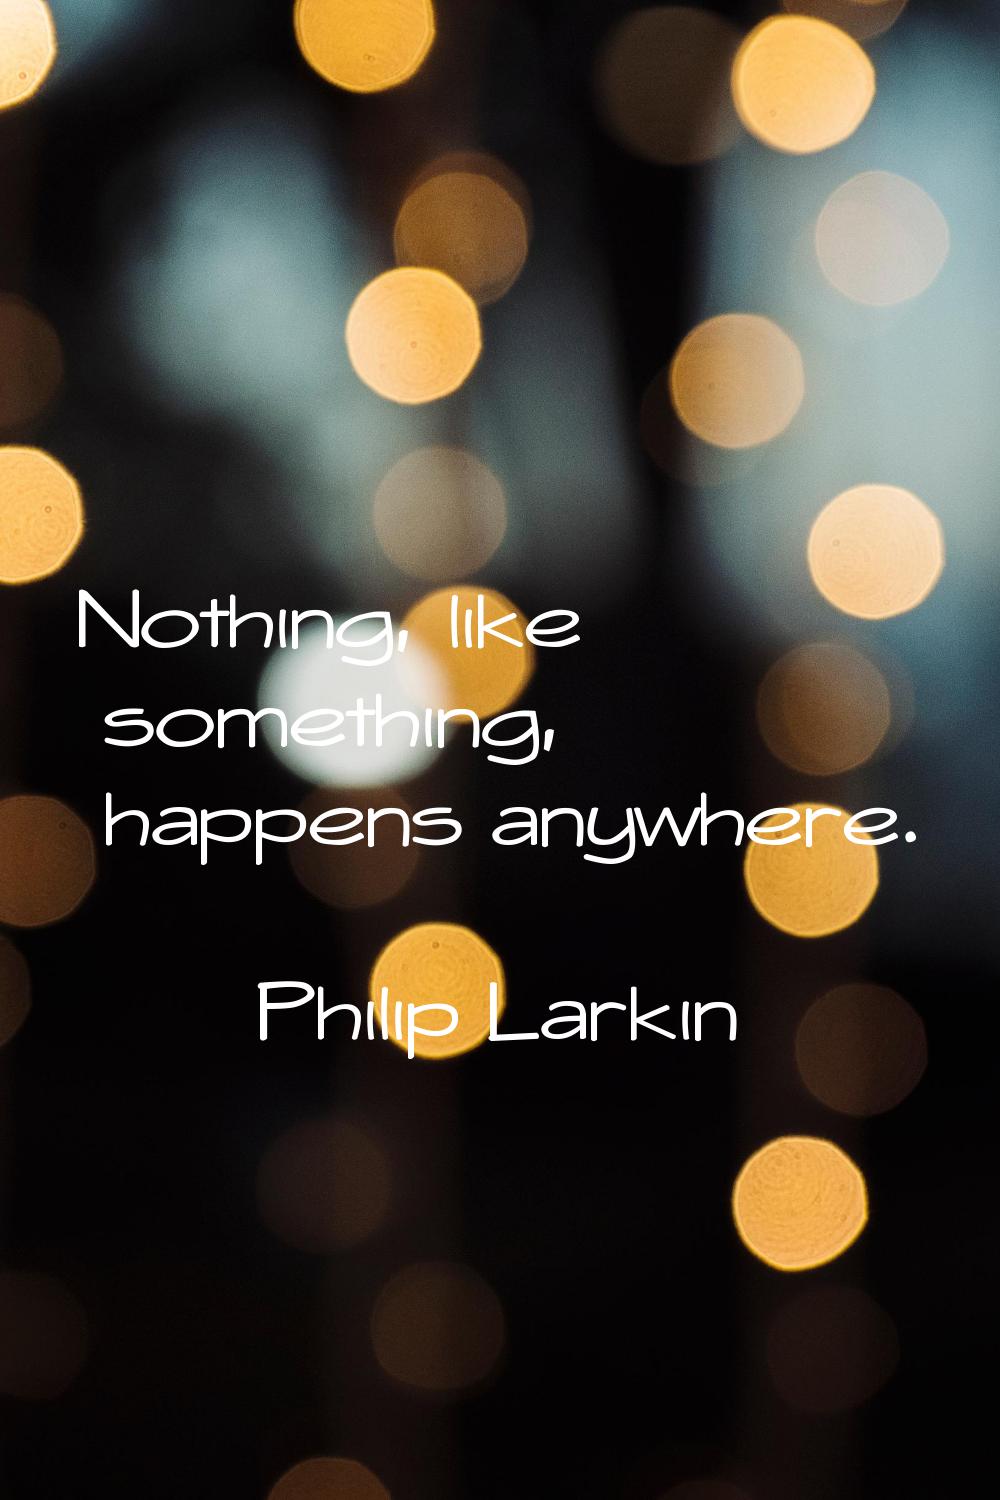 Nothing, like something, happens anywhere.